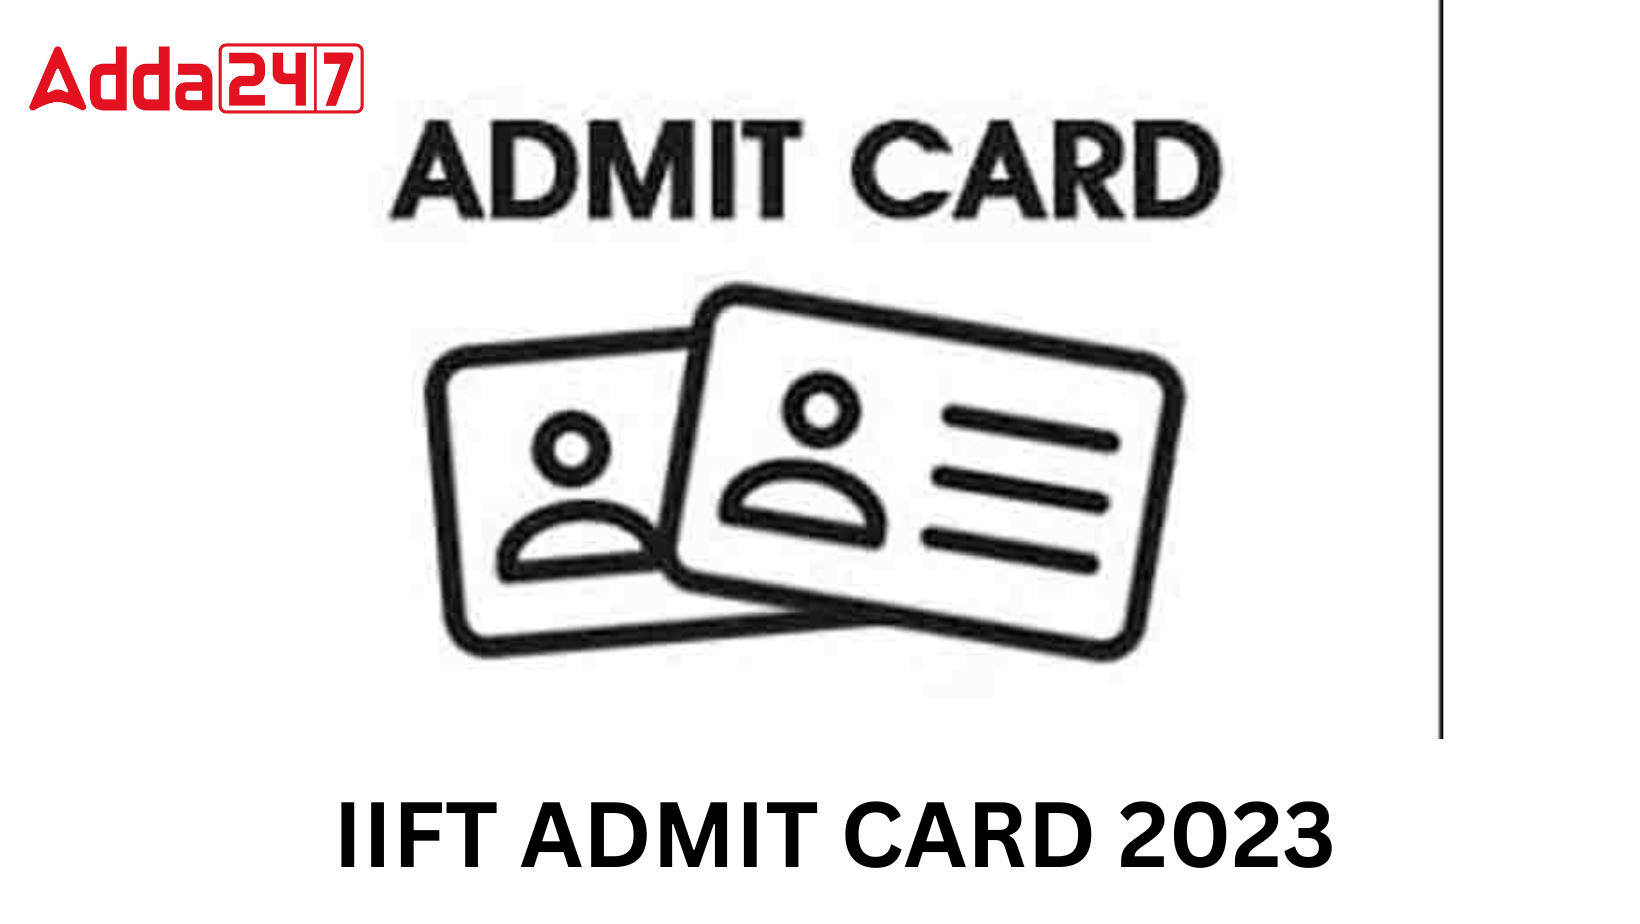 IIFT ADMIT CARD 2023